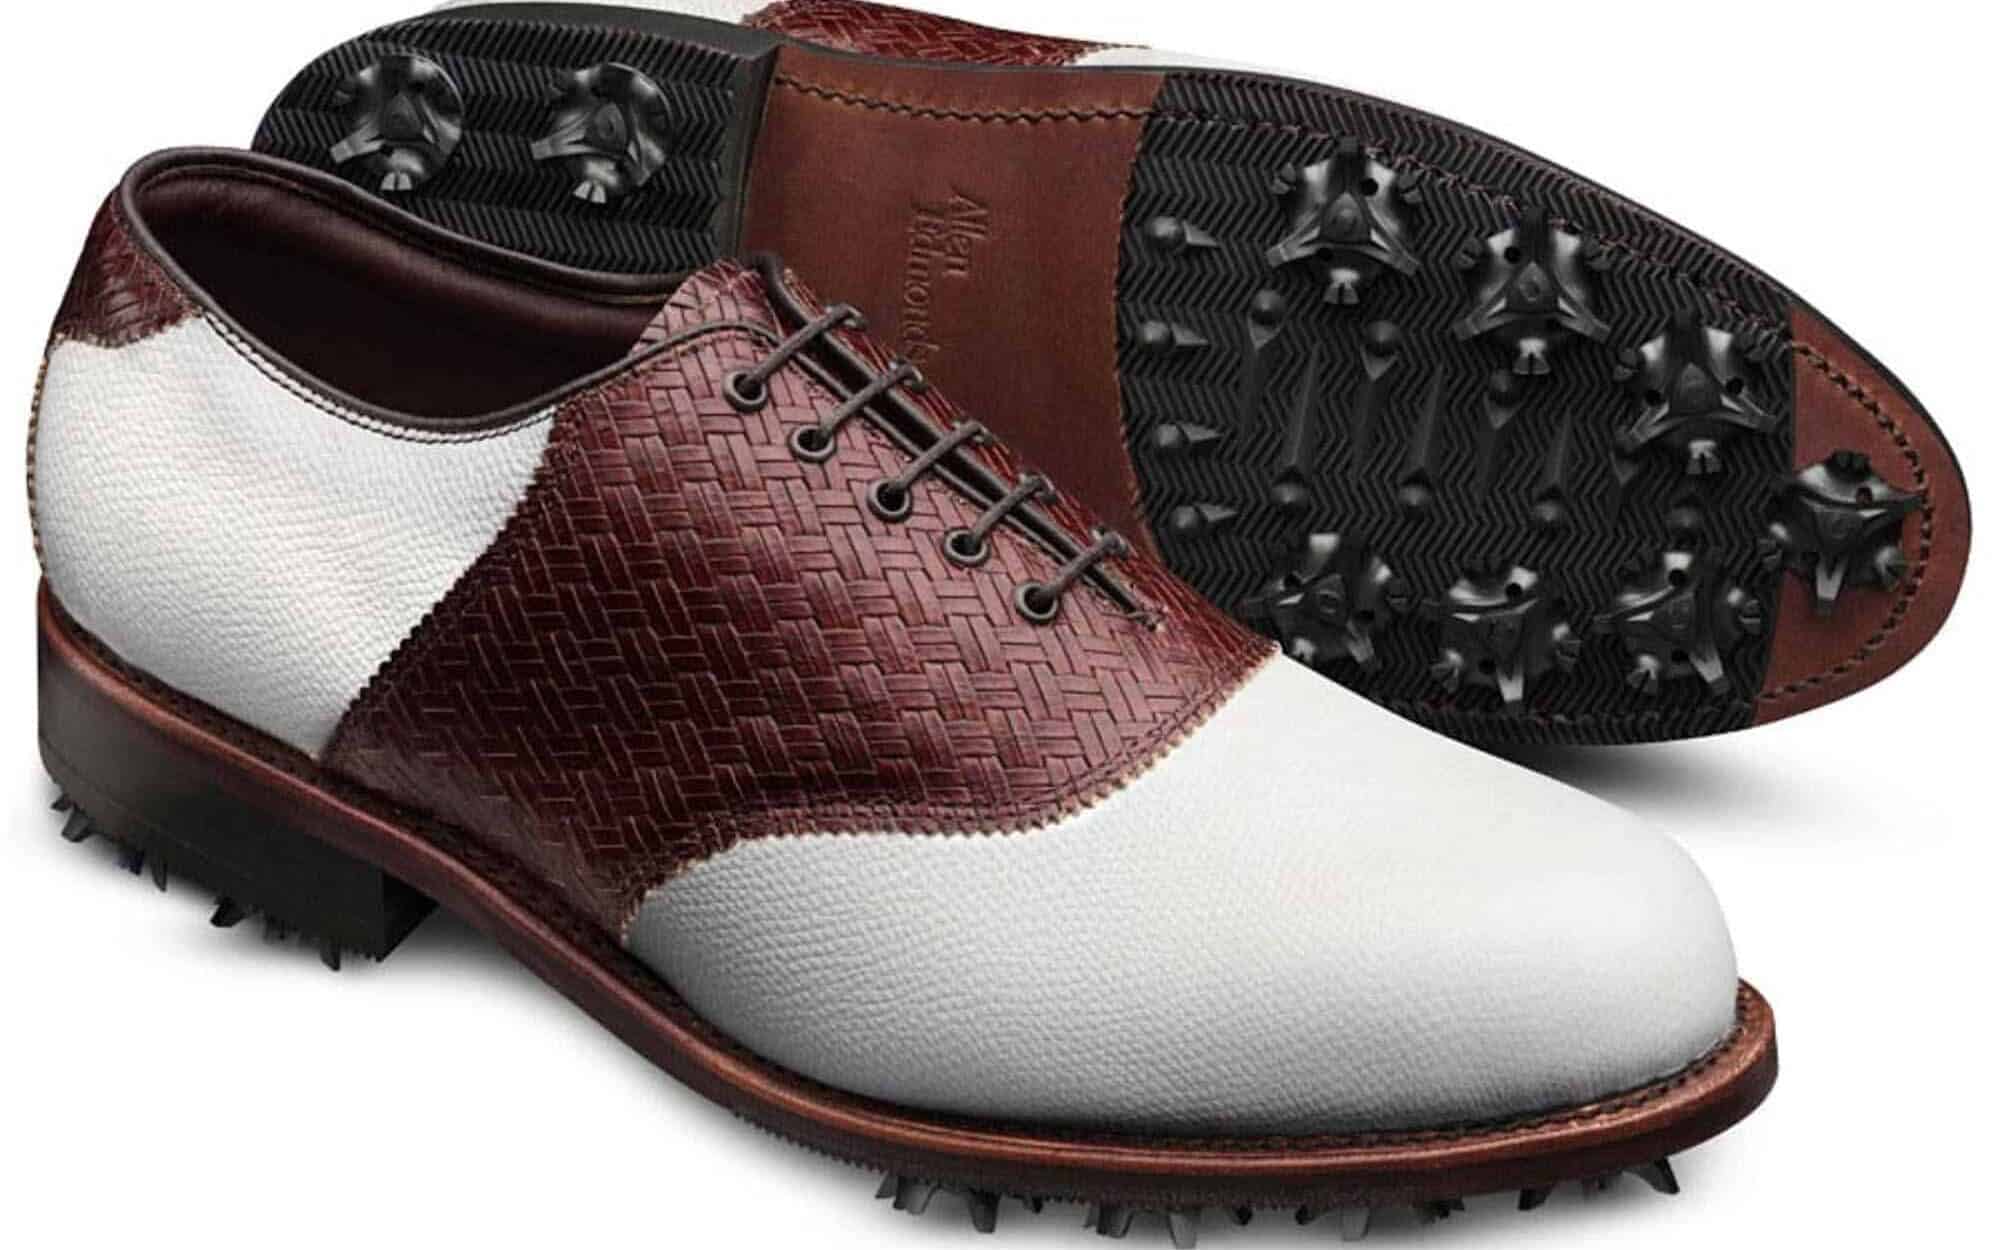 Redan Golf Shoes from Allen Edmonds